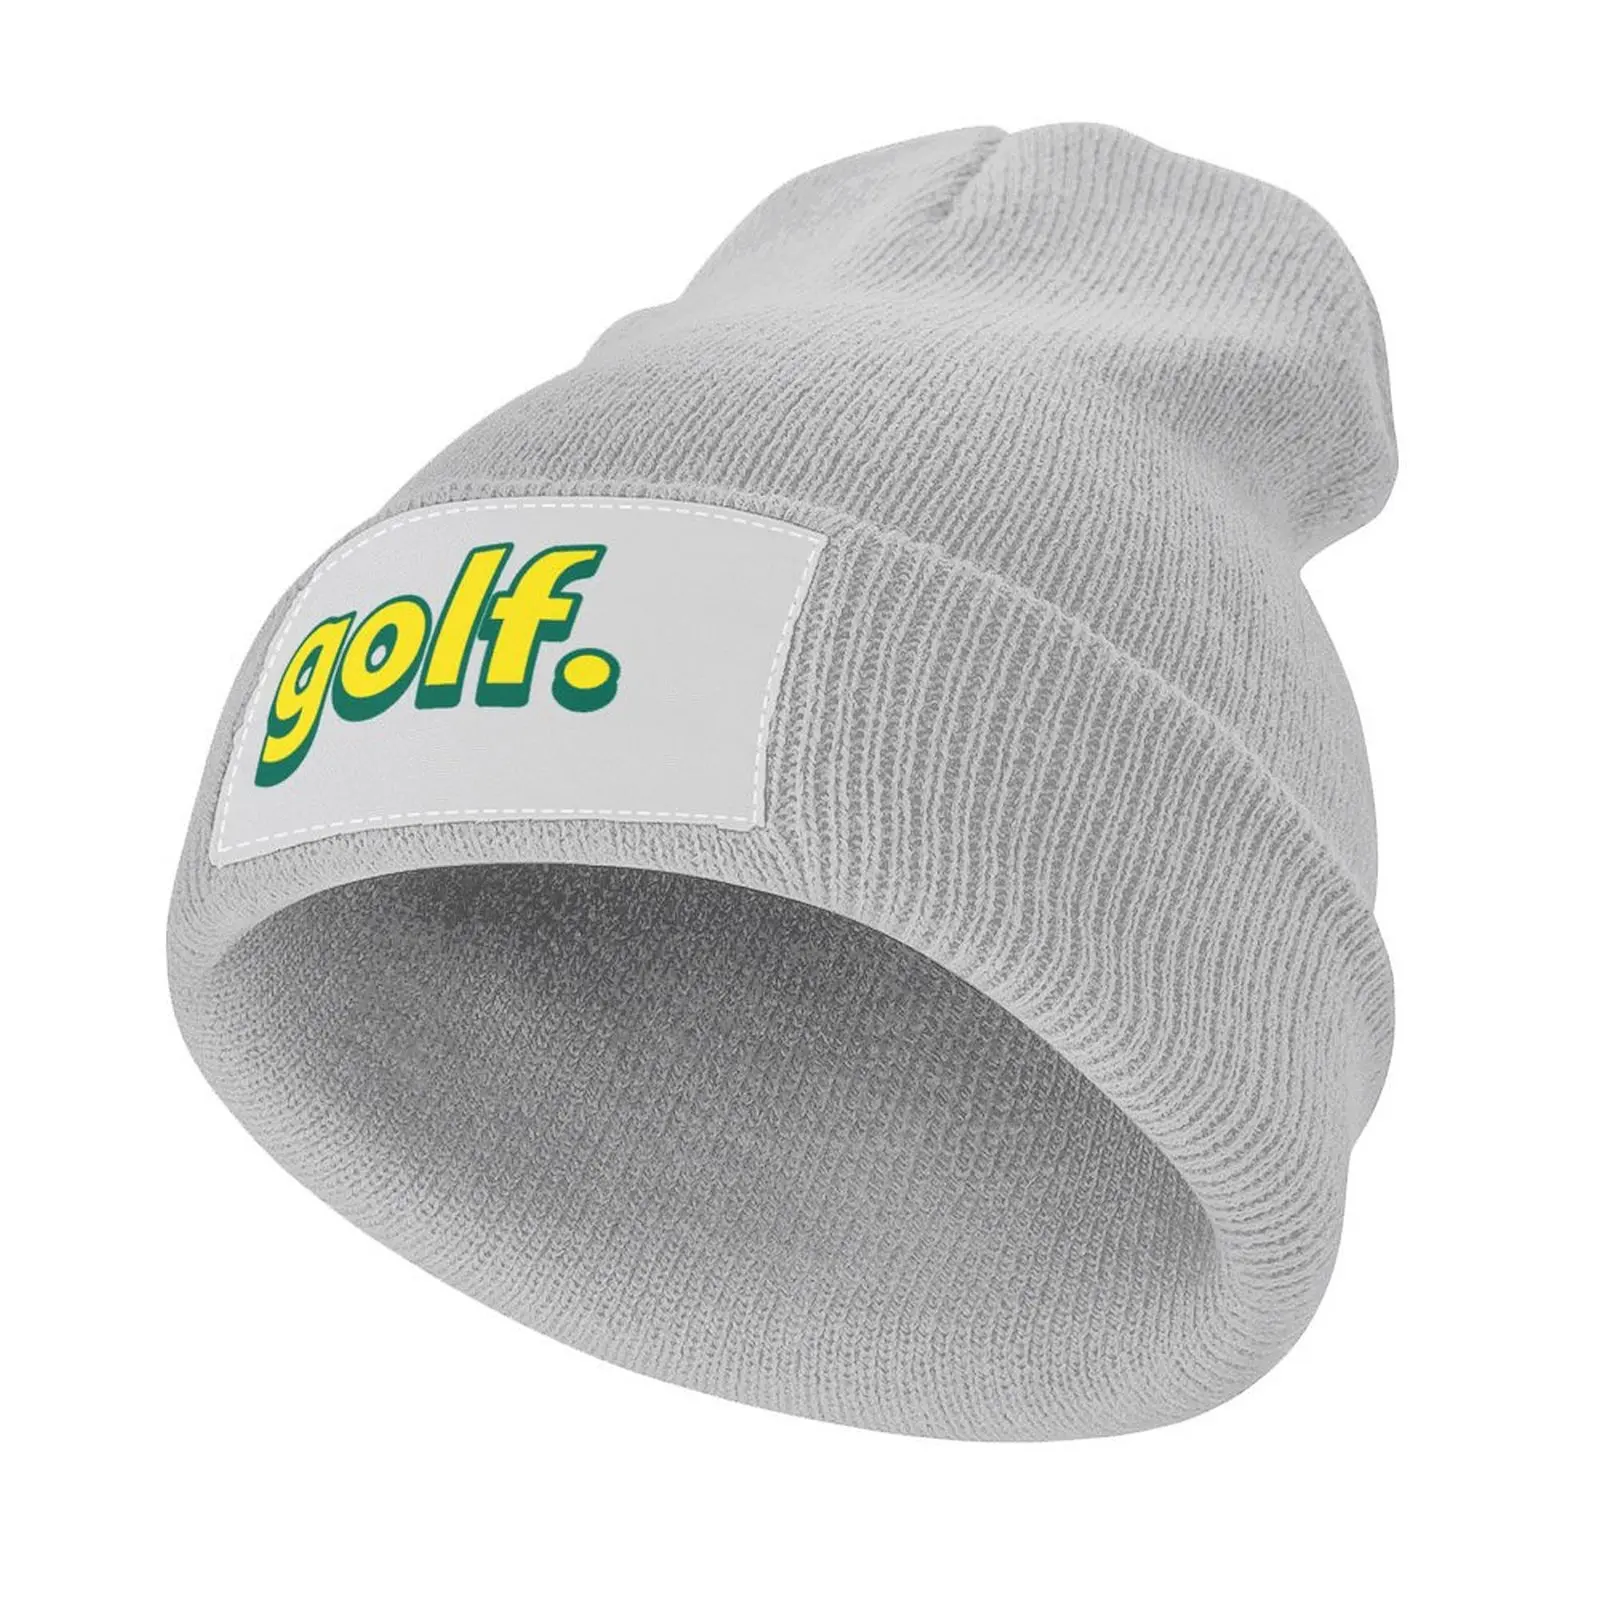 

Забавная вязаная кепка для гольфа детская шапка для альпинизма пляжная шапка шапки бейсболка женская пляжная модная мужская